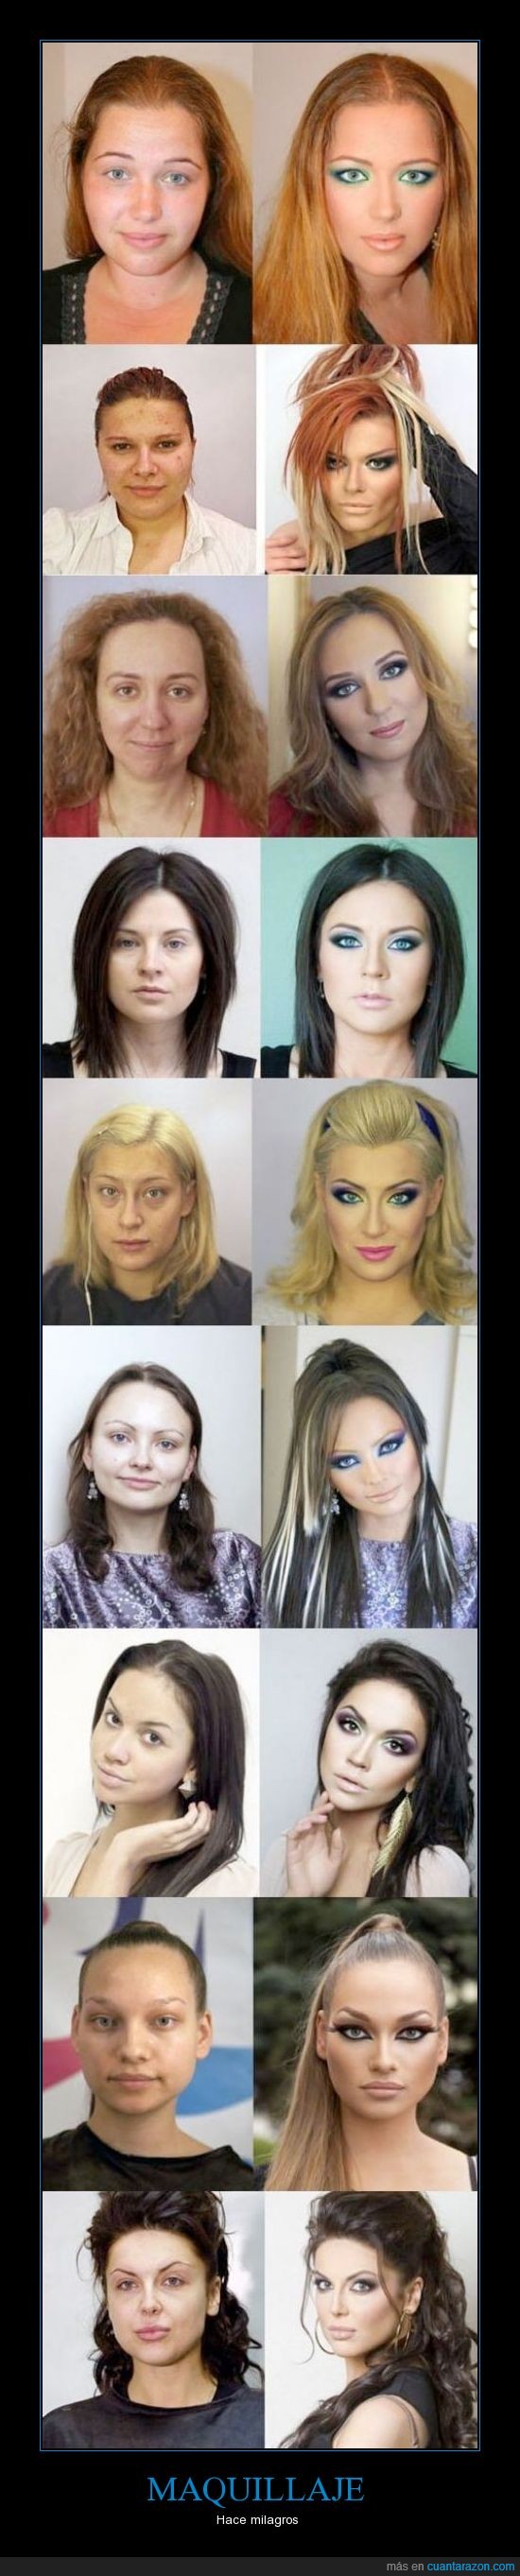 mujeres,prueba,se ven mejor en el cuadro derecho,maquillaje